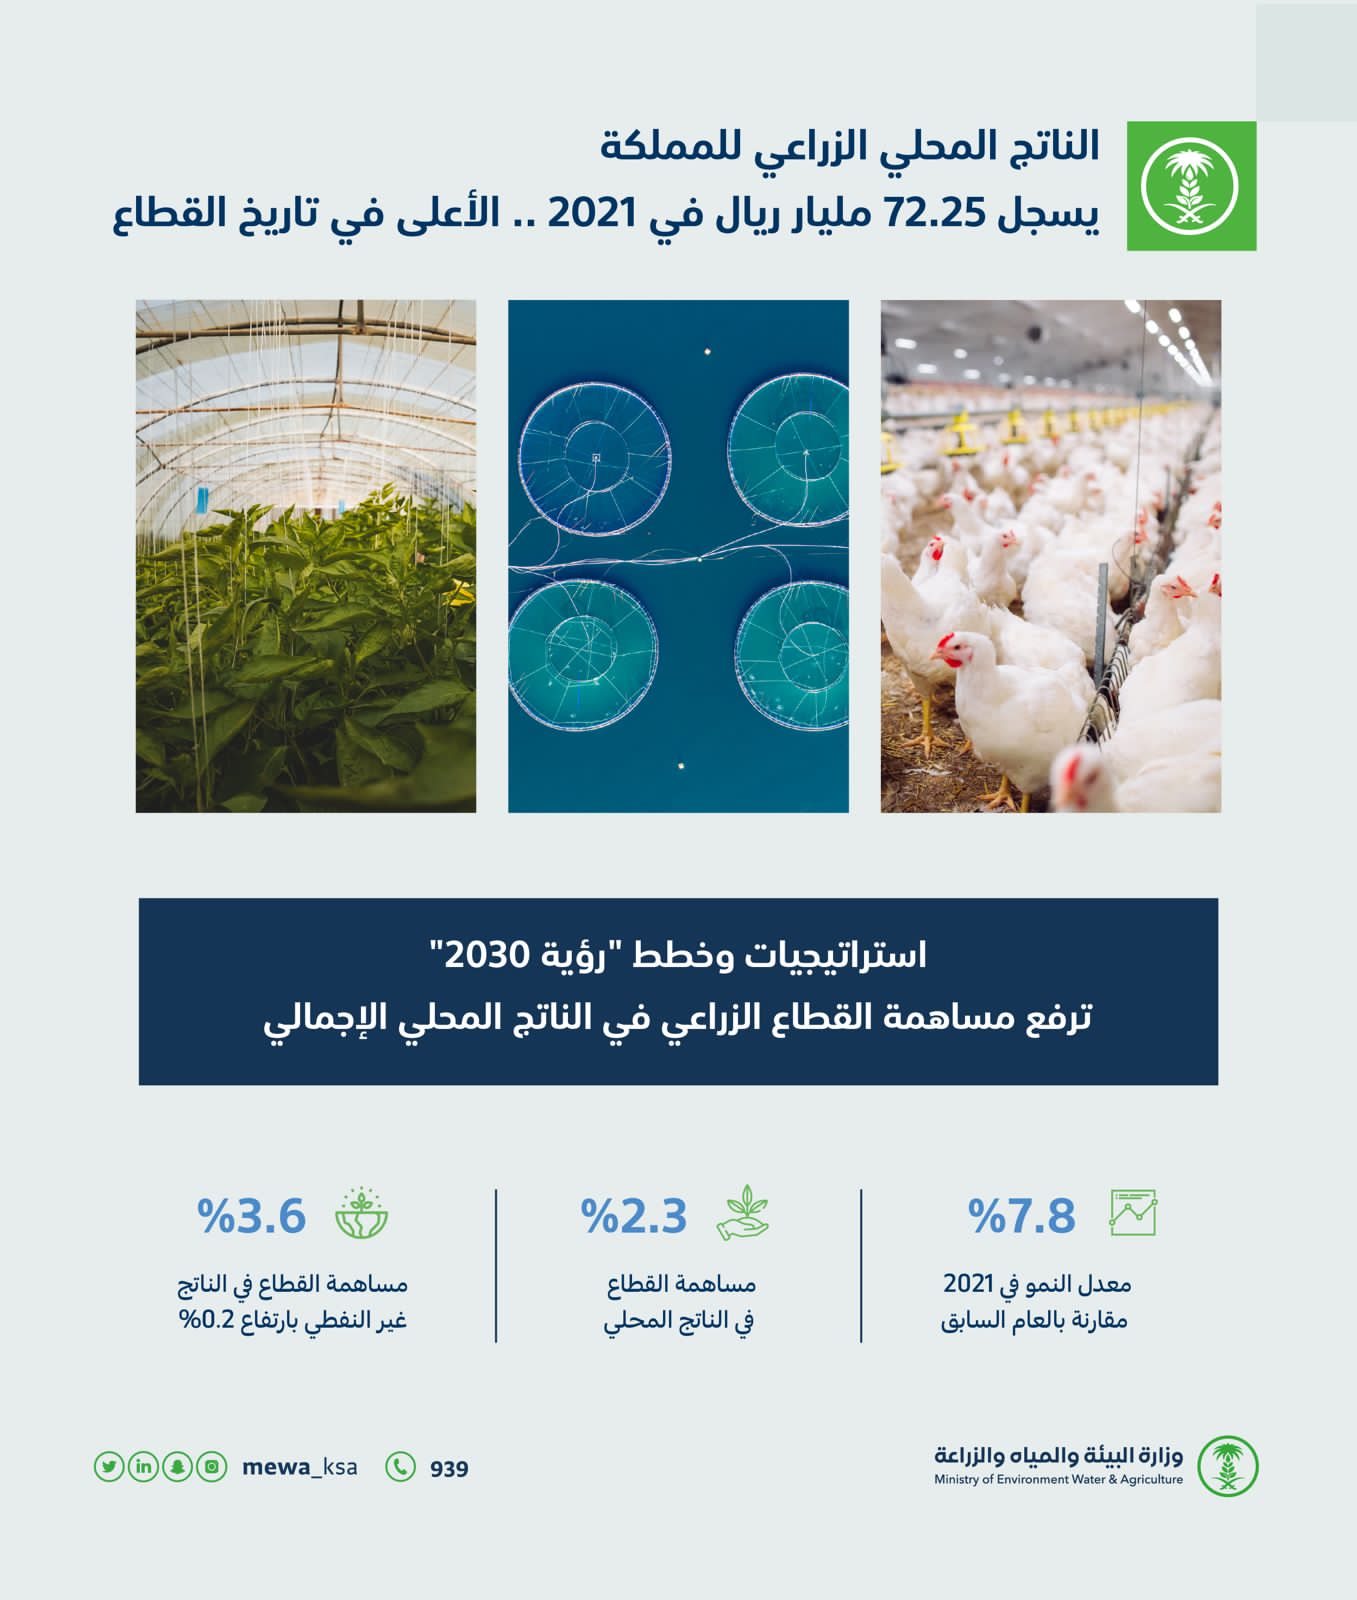 الناتج المحلي الزراعي للمملكة يسجل ٧٢.٢٥ مليار عام ٢٠٢١